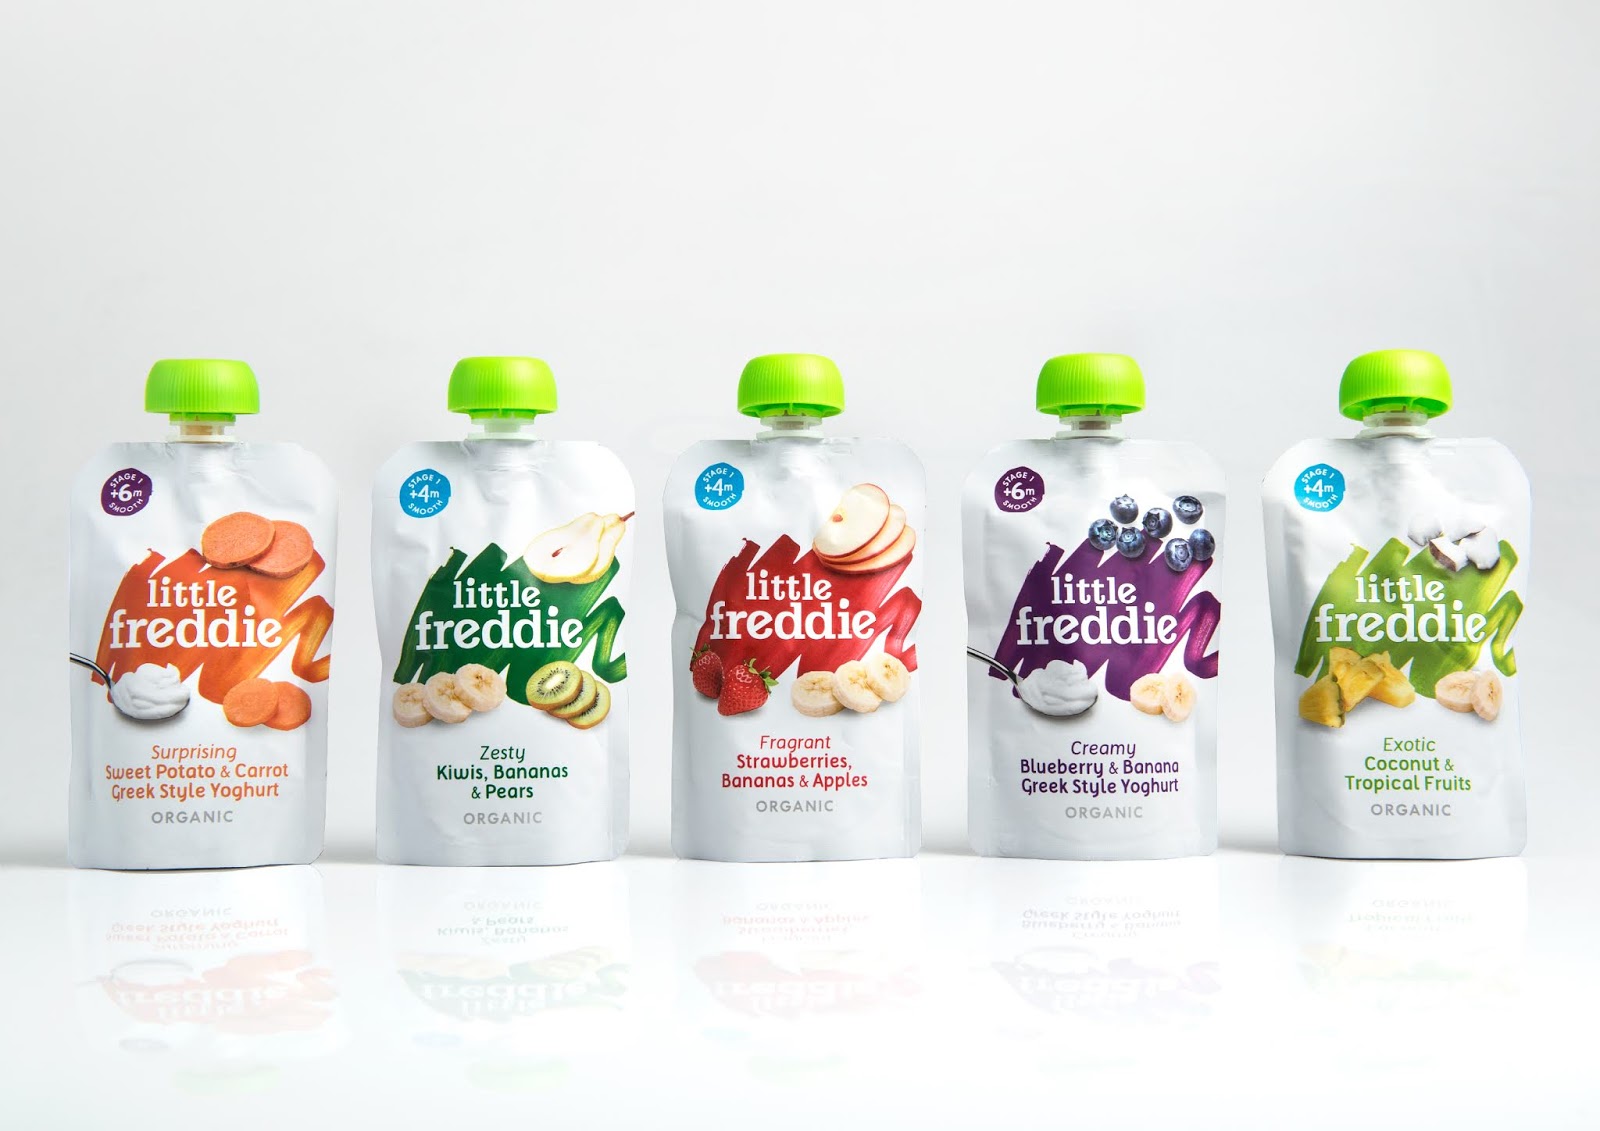 婴儿食品西安oe欧亿体育app官方下载
品牌包装设计